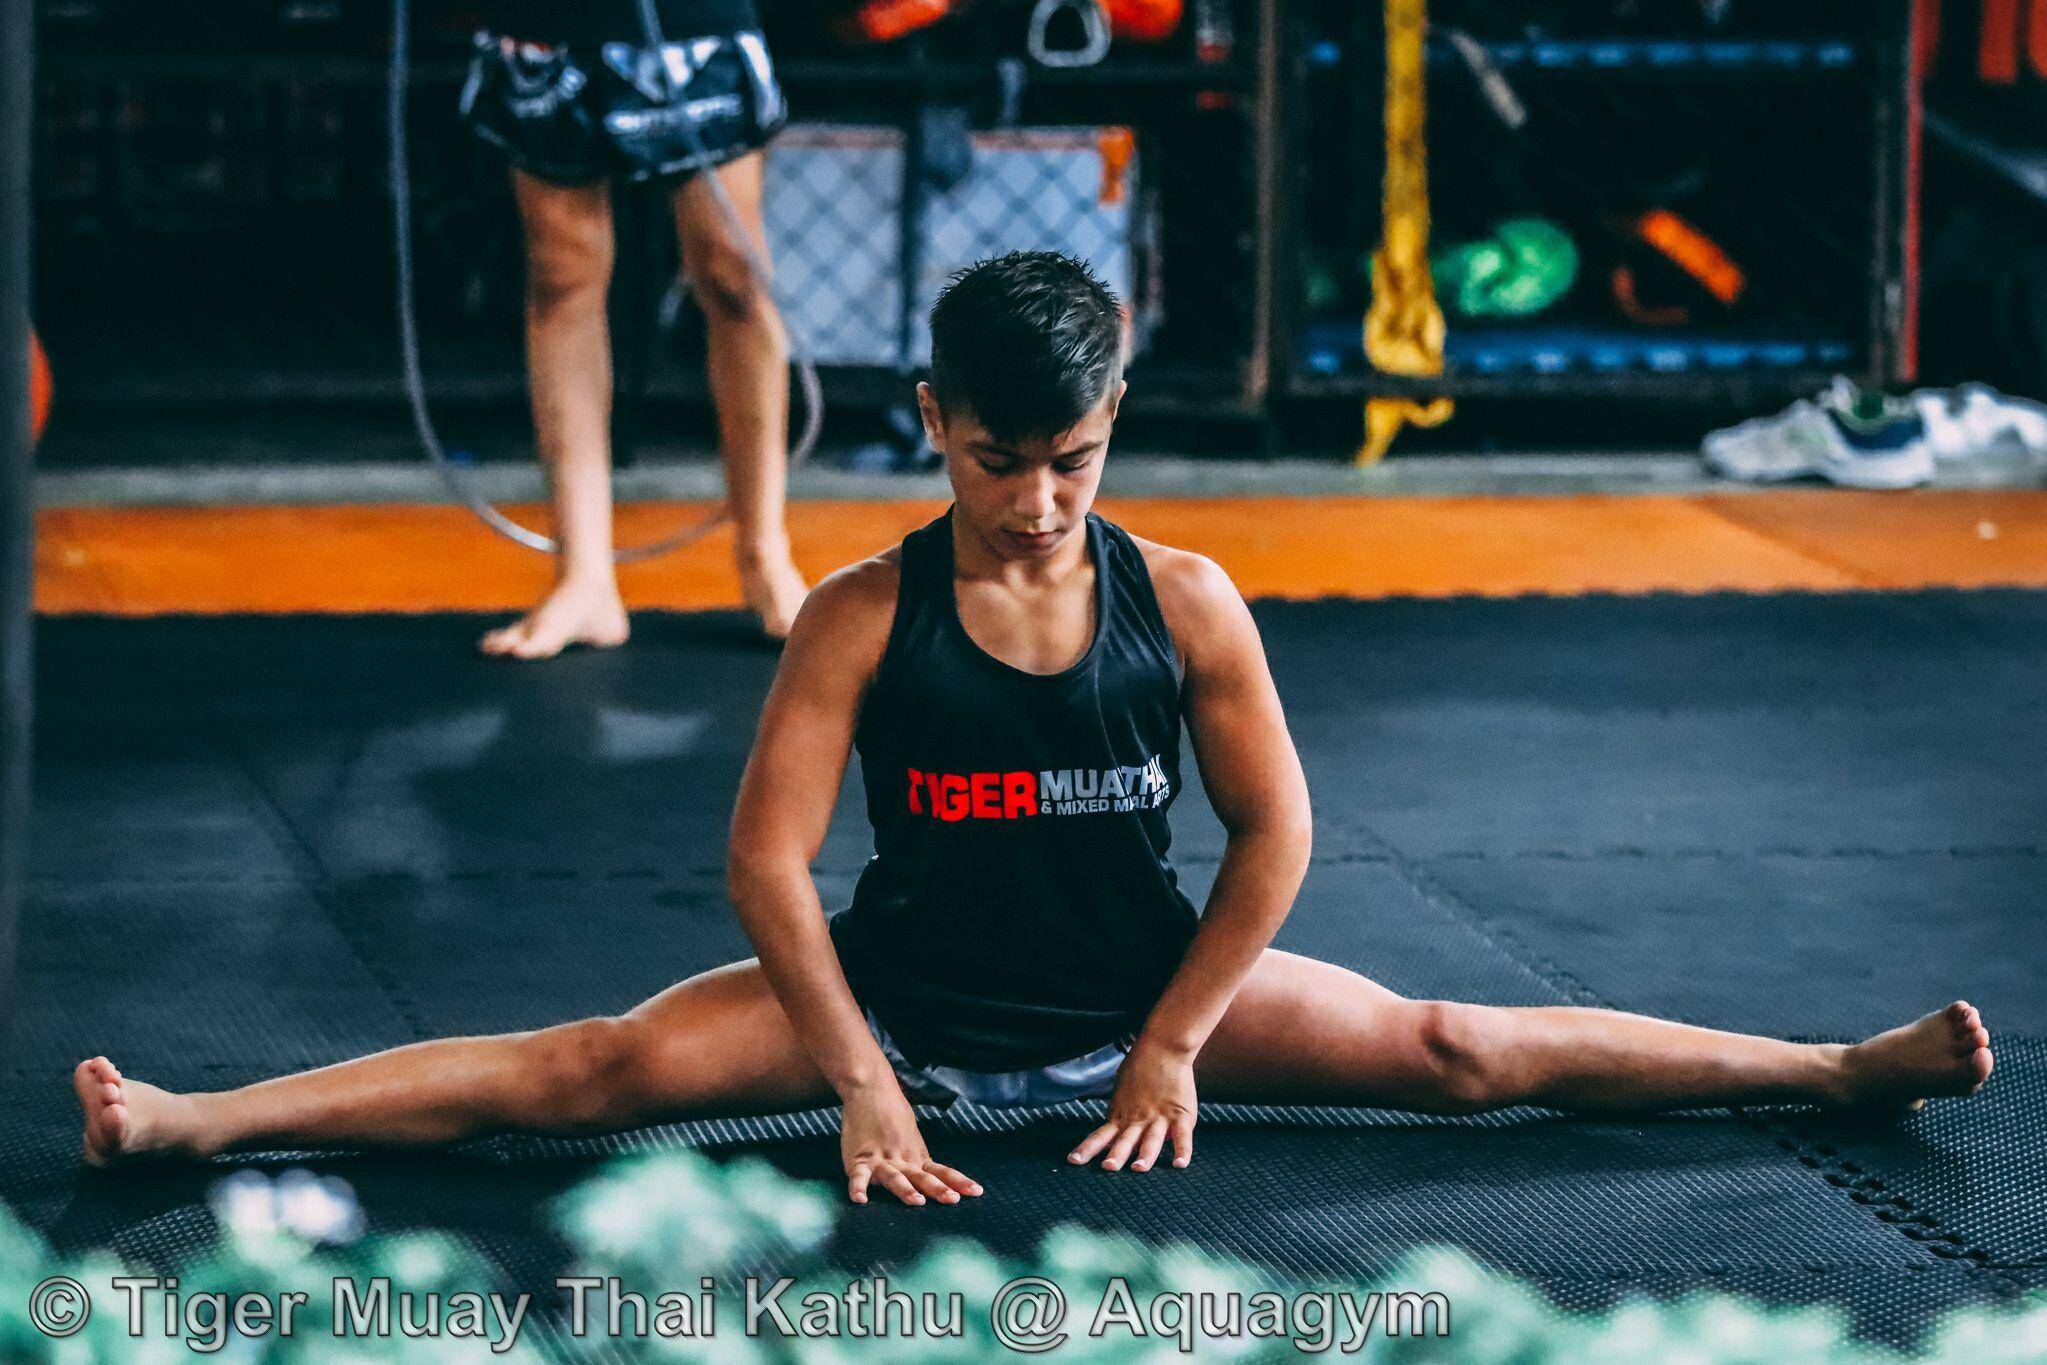 Le muay-thai (boxe thaïe) est le sport de contact le plus populaire de Thaïlande, et un des piliers de la culture du pays, à tel point que le gouvernement thaïlandais demande depuis des années ...